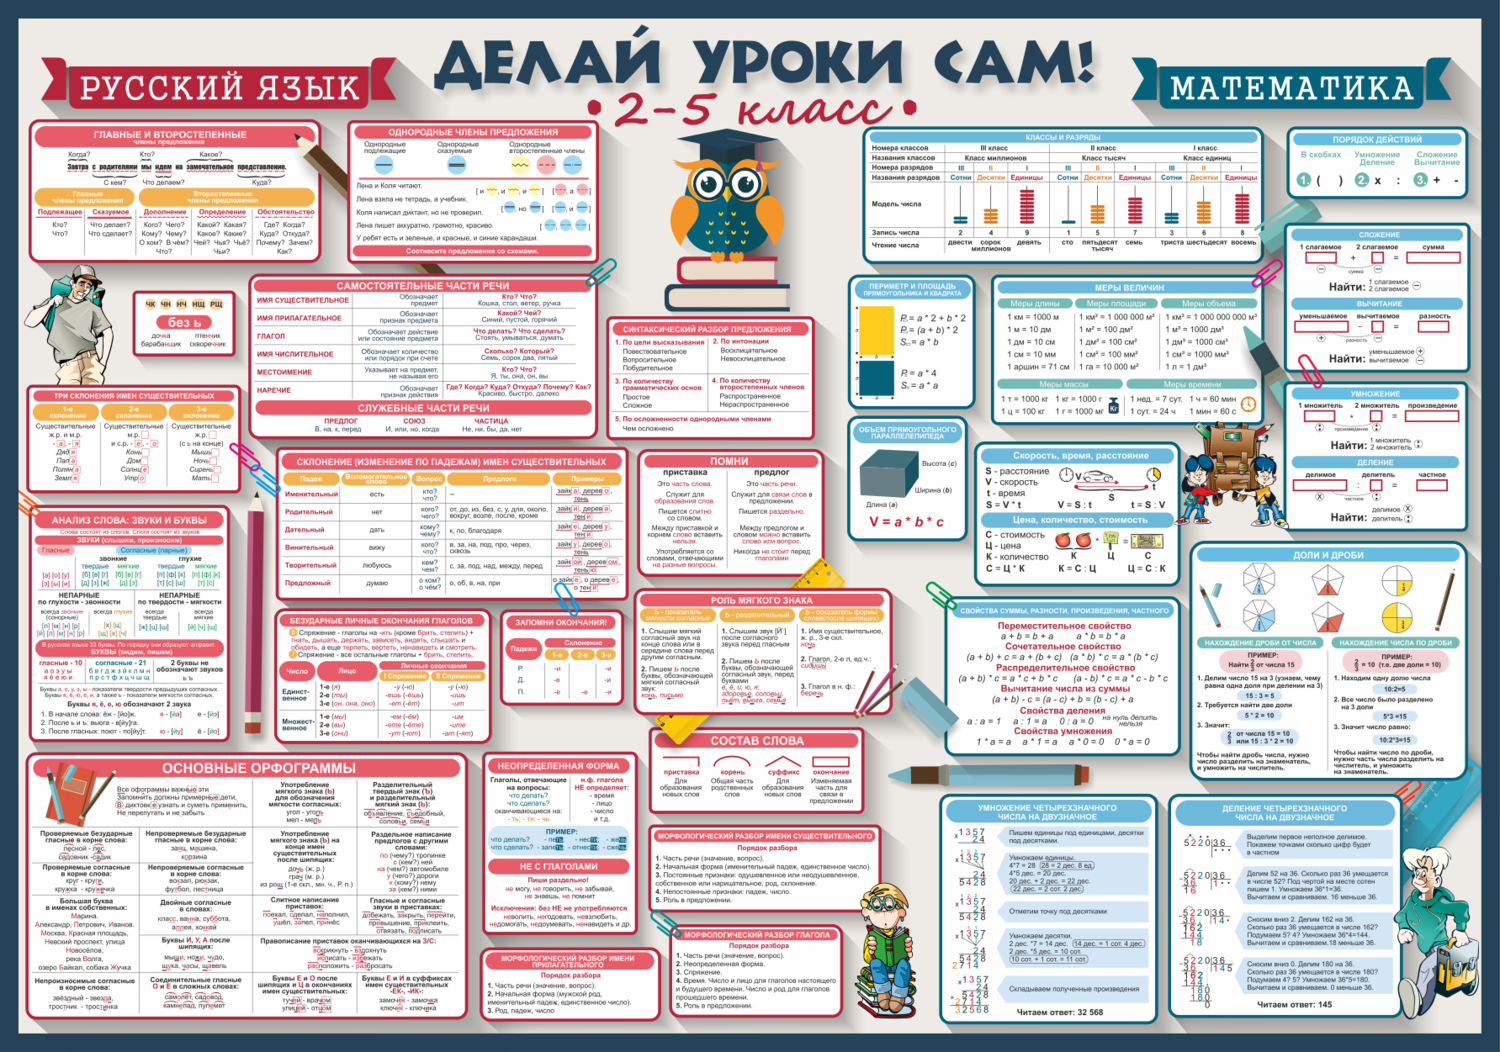 Математика русский язык каникулы. Делай уроки сам плакаты. Плакаты для начальной школы. Делай уроки сам плакаты 2-5 класс. Плакат с правилами.